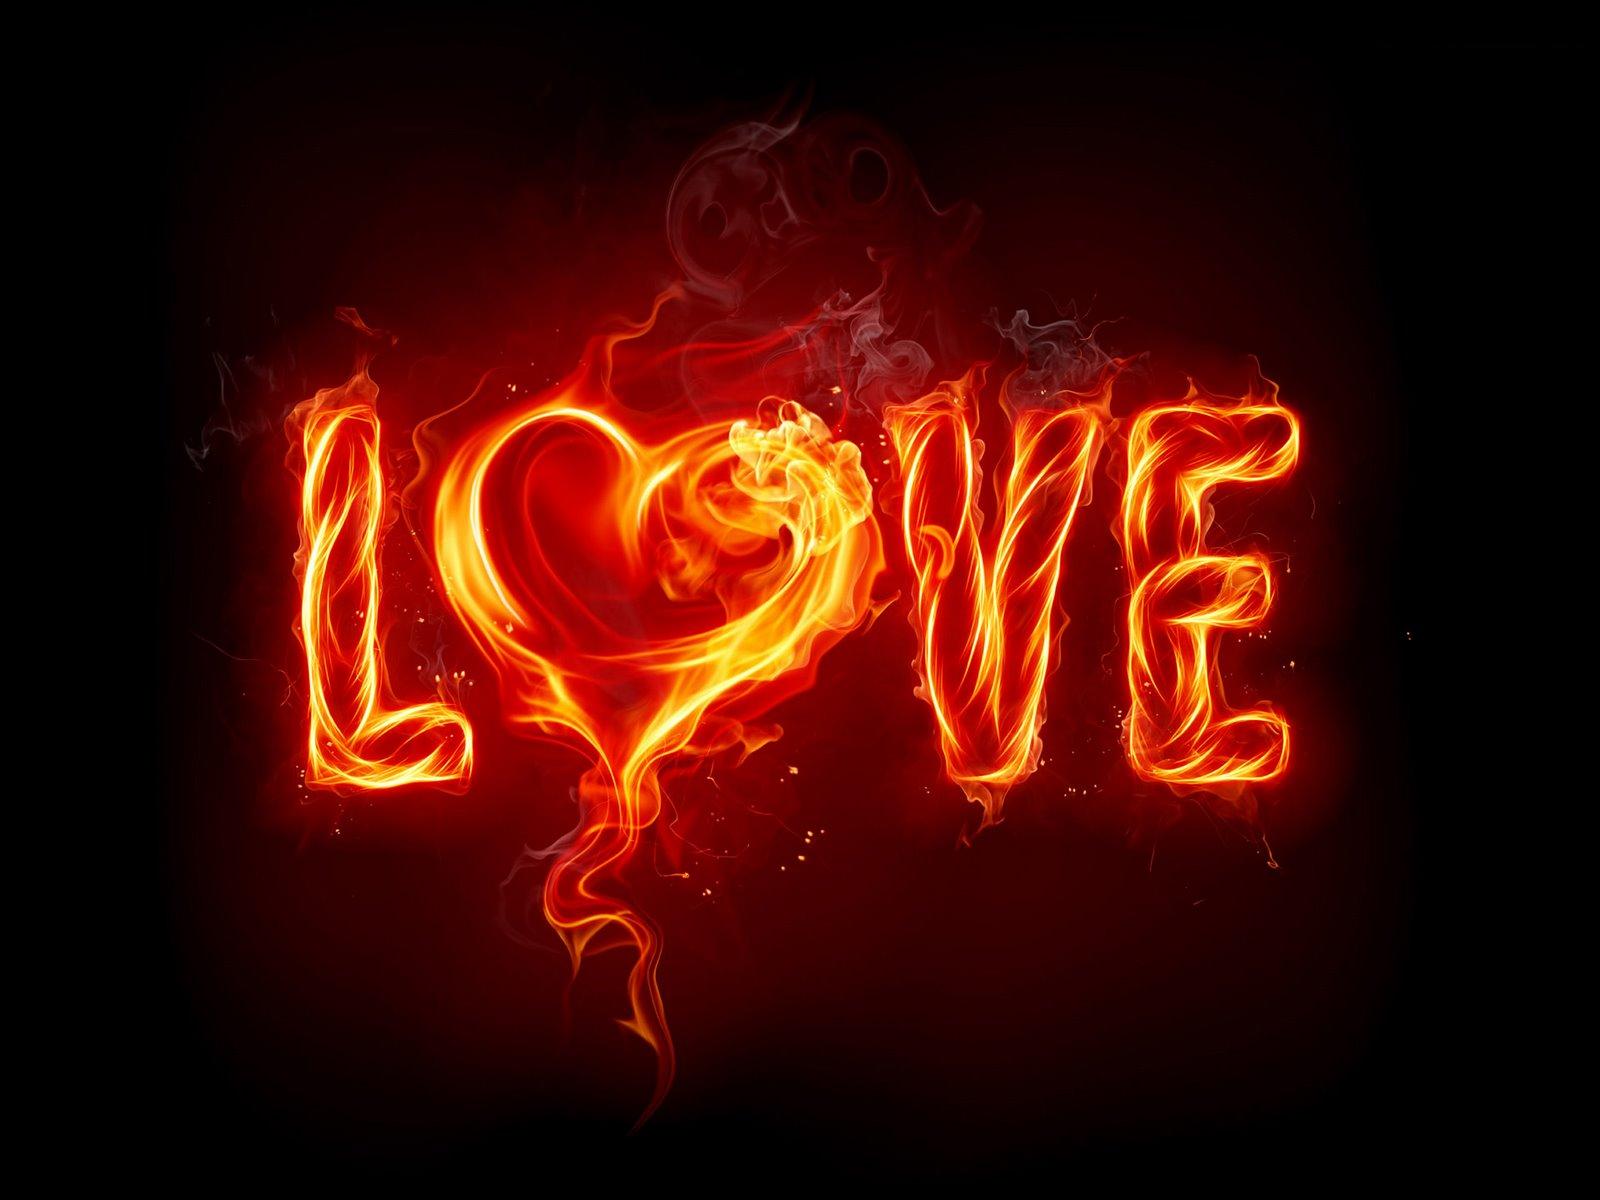 http://2.bp.blogspot.com/_WmfnL79SyIE/S4vZBQG3YYI/AAAAAAAAB9Y/a3s7-kxlrHc/s1600/burning-love-wallpaper.jpg